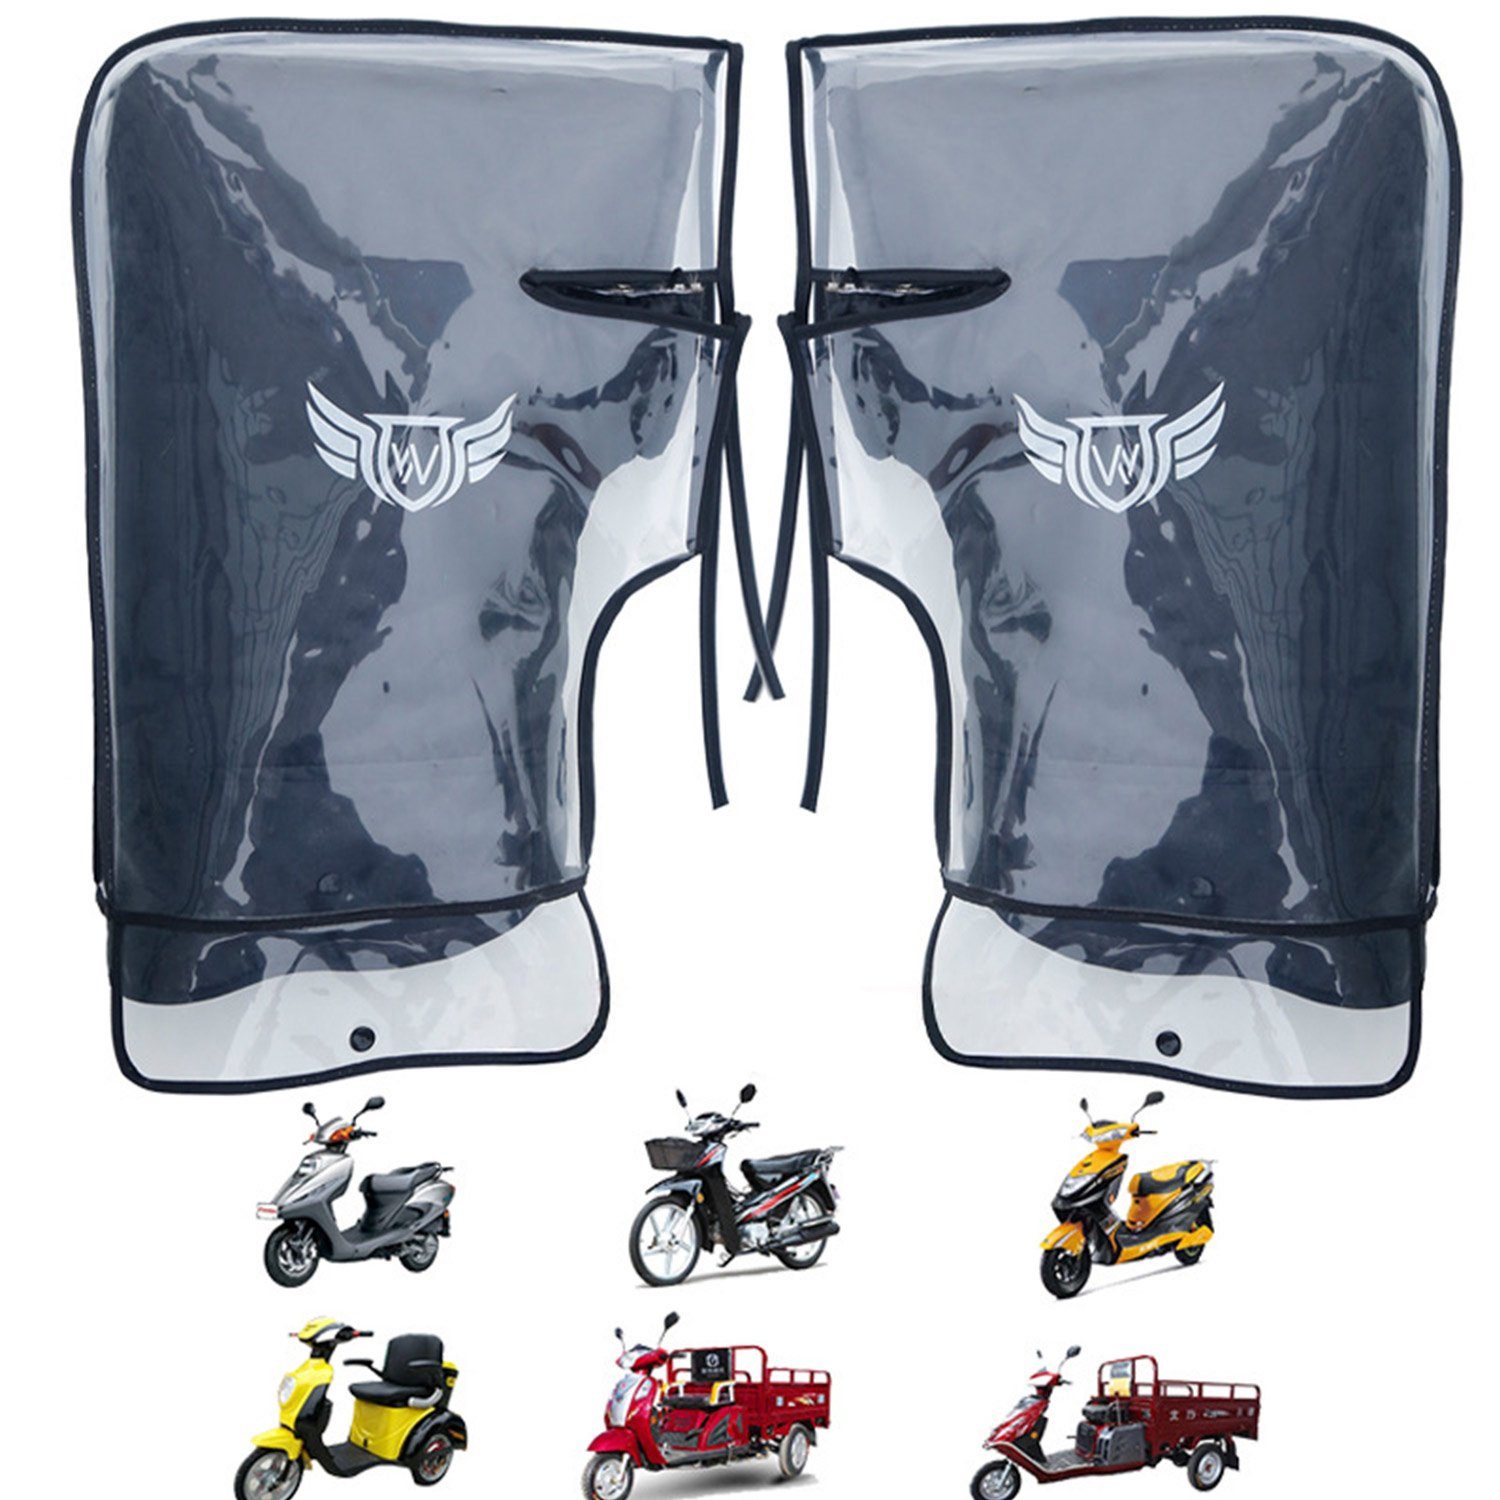 Lenkerhandschuhe Schwarze Fahrradhandschuhe winddicht große MAGICSHE Mund+wasserdichte Schale Fahrzeugausrüstung